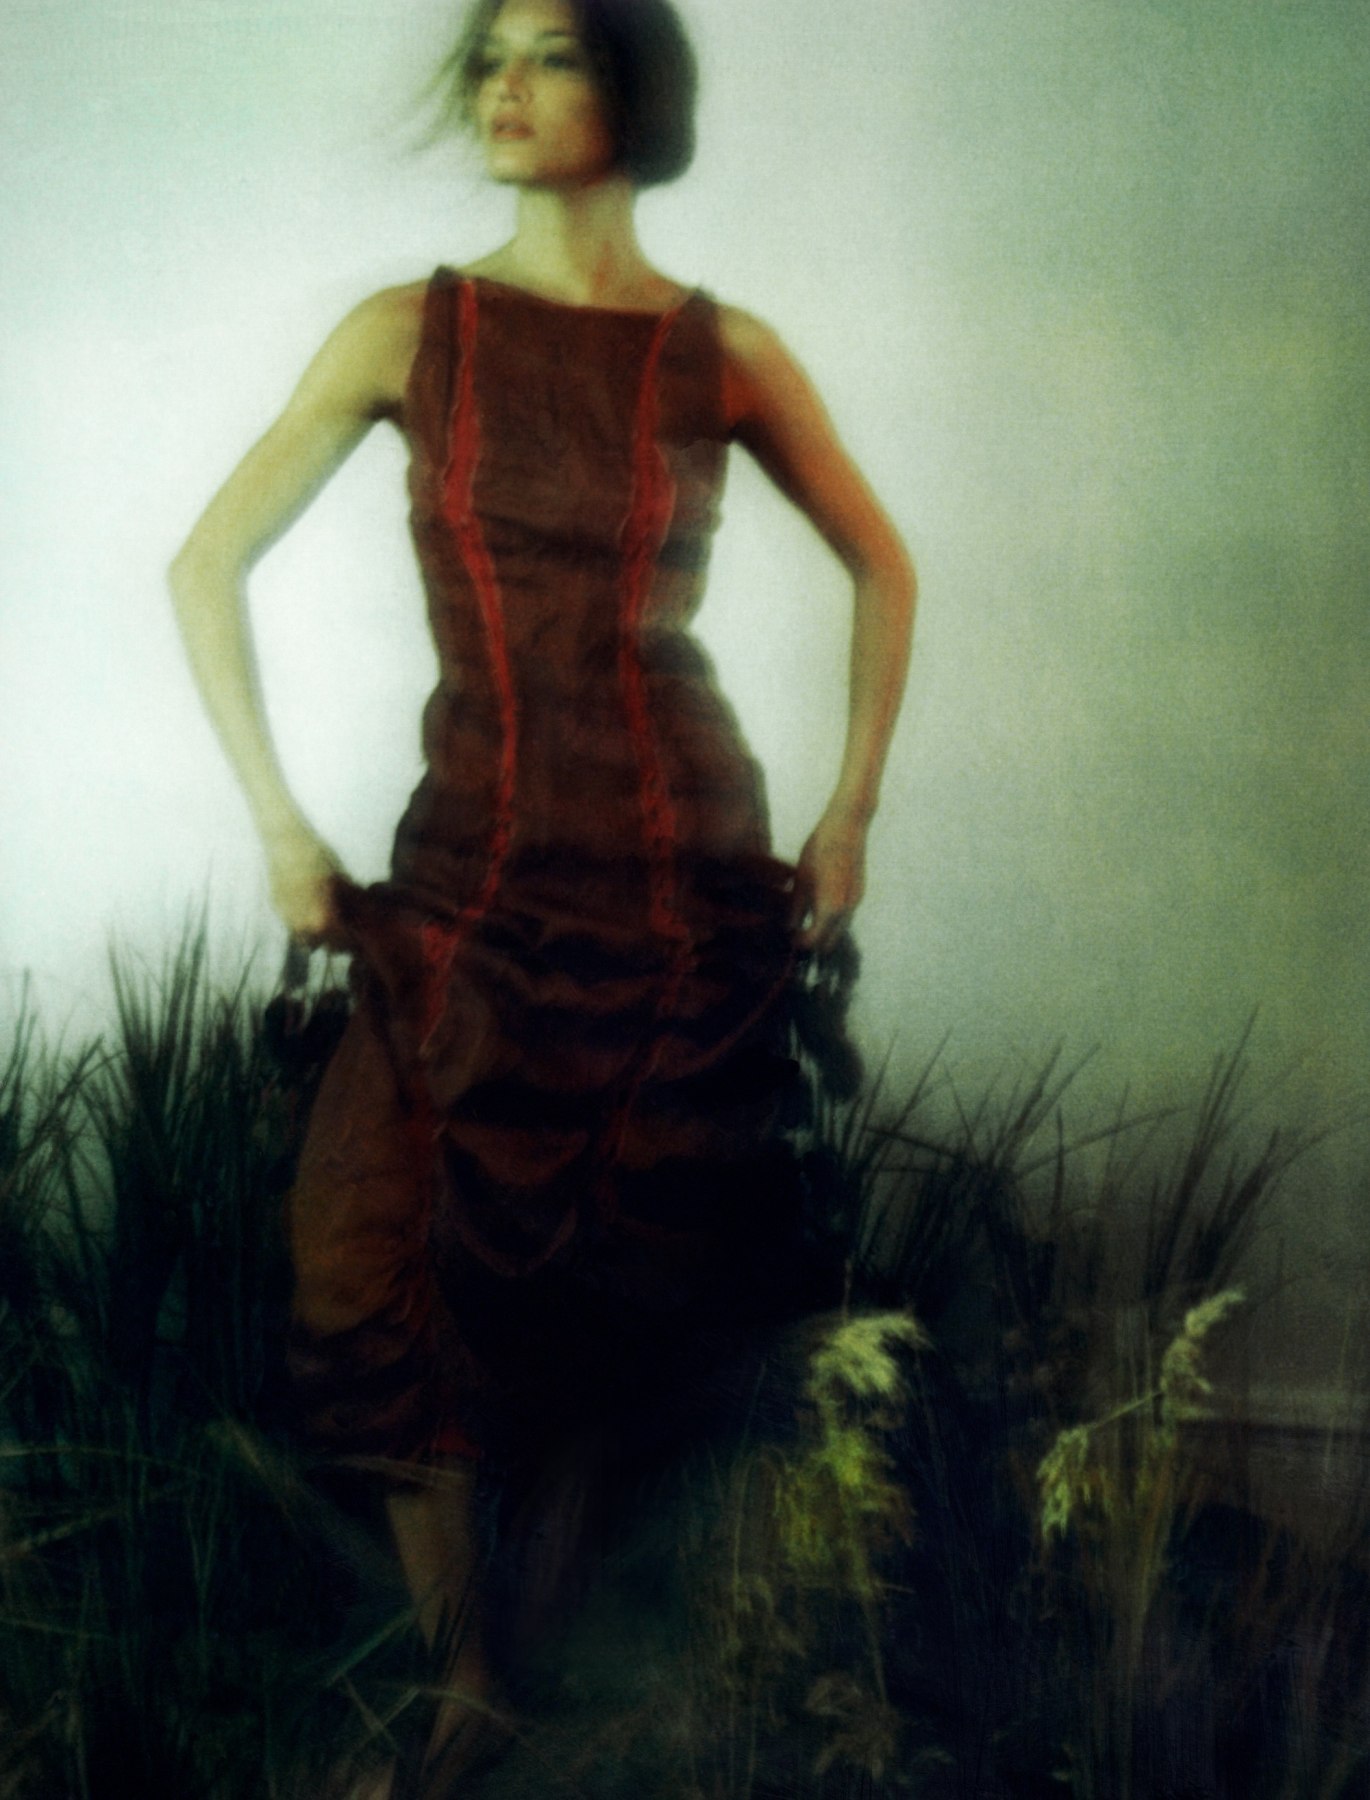 Patrick de Warren, Awoken Dream, Girl in Field 3, 2000, Sous Les Etoiles Gallery